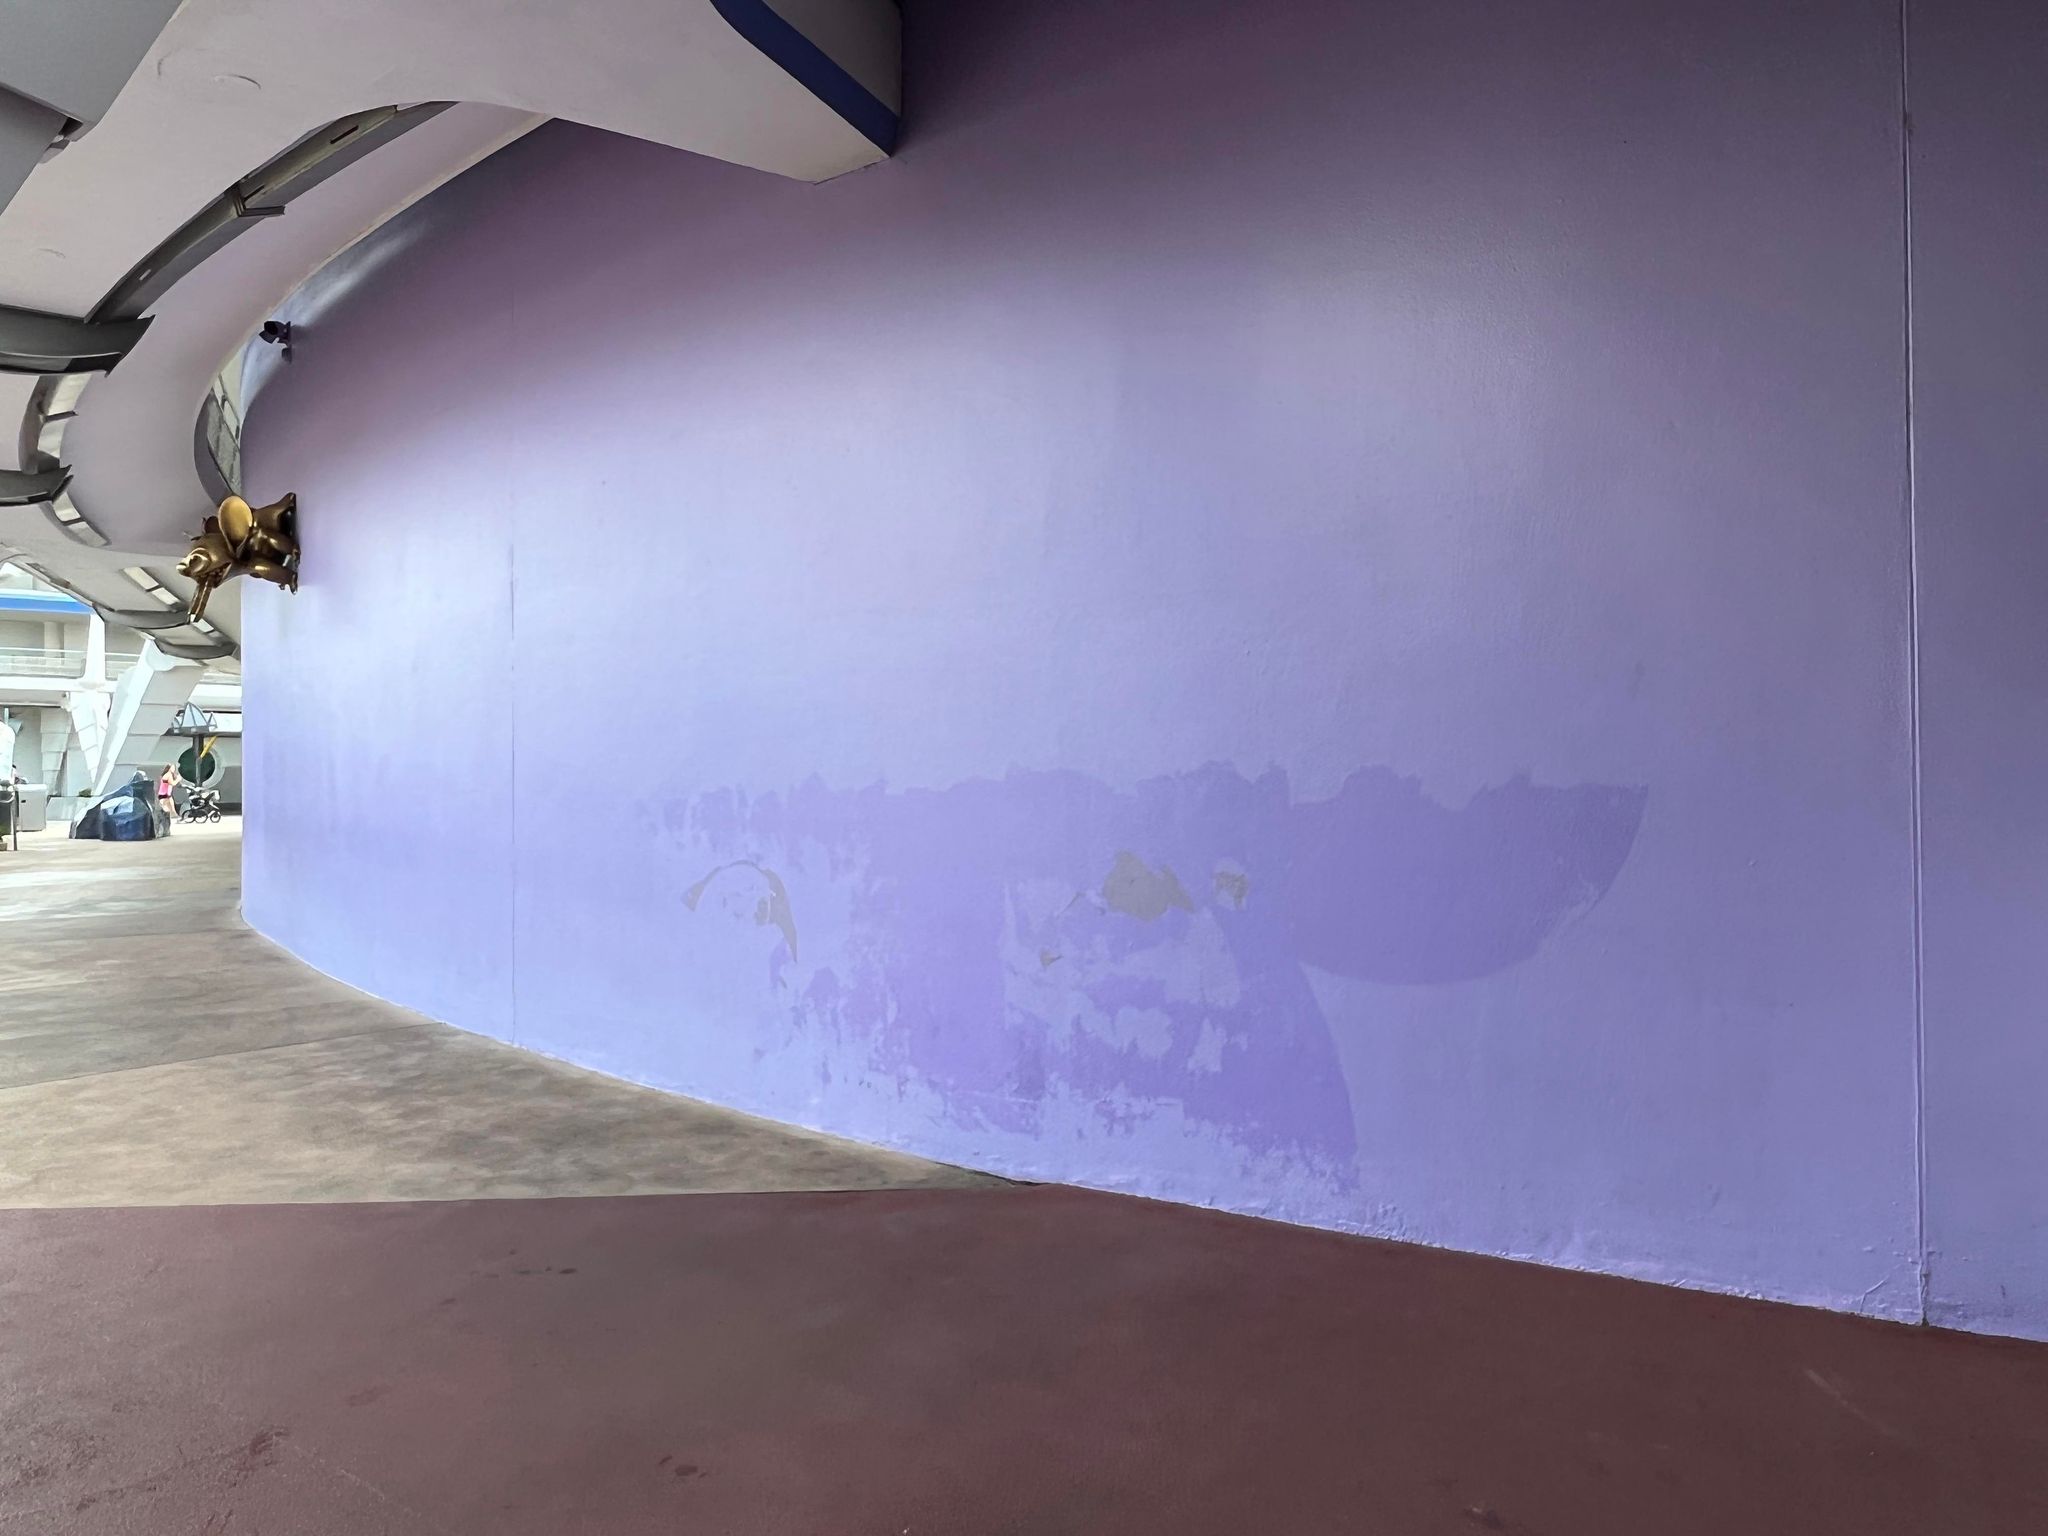 purple wall pride mural gone